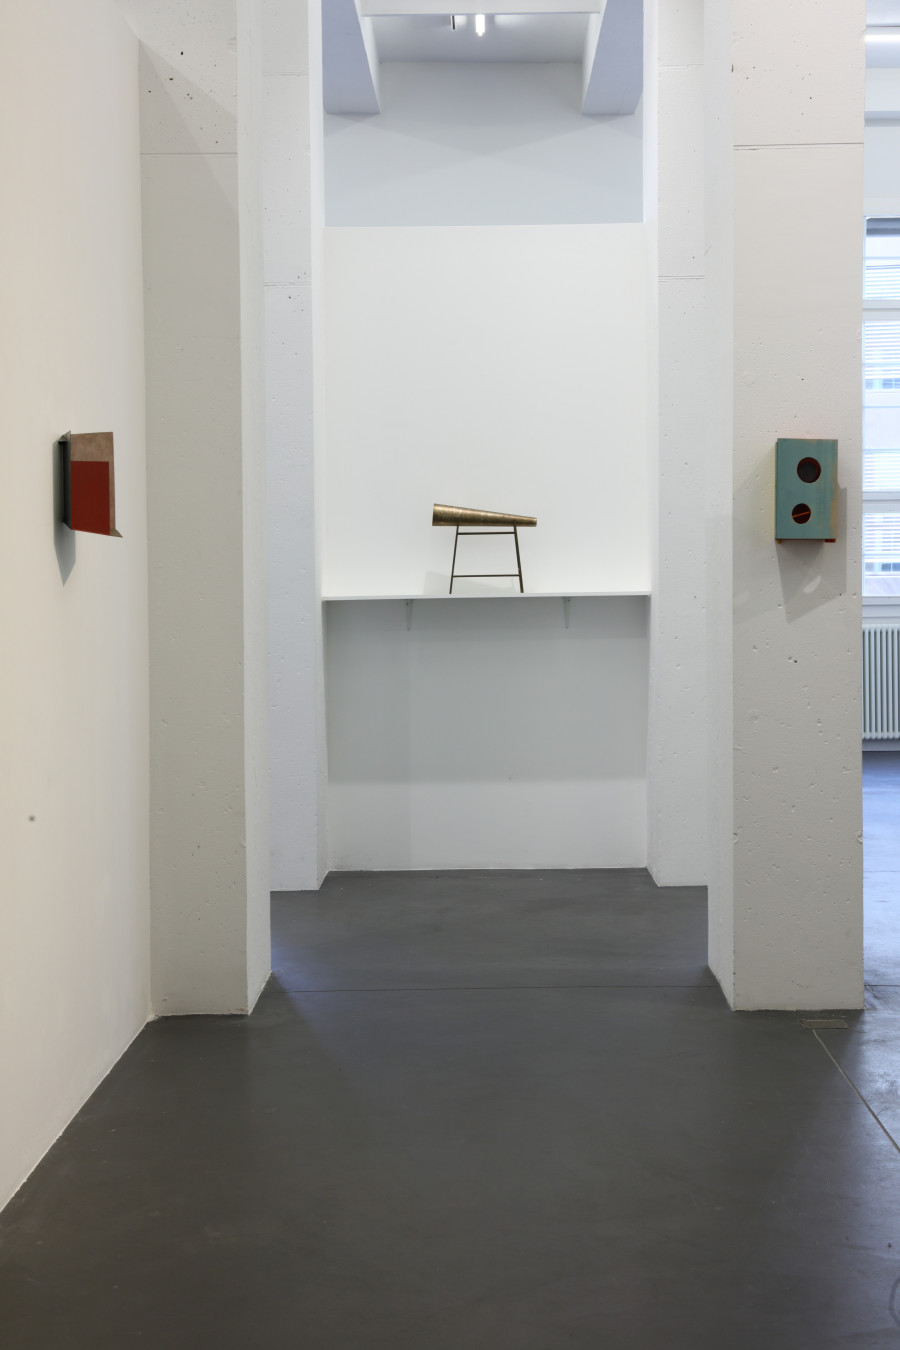 Michel Sauer: Kroatz Batz, Installation views, 2023, annex14.